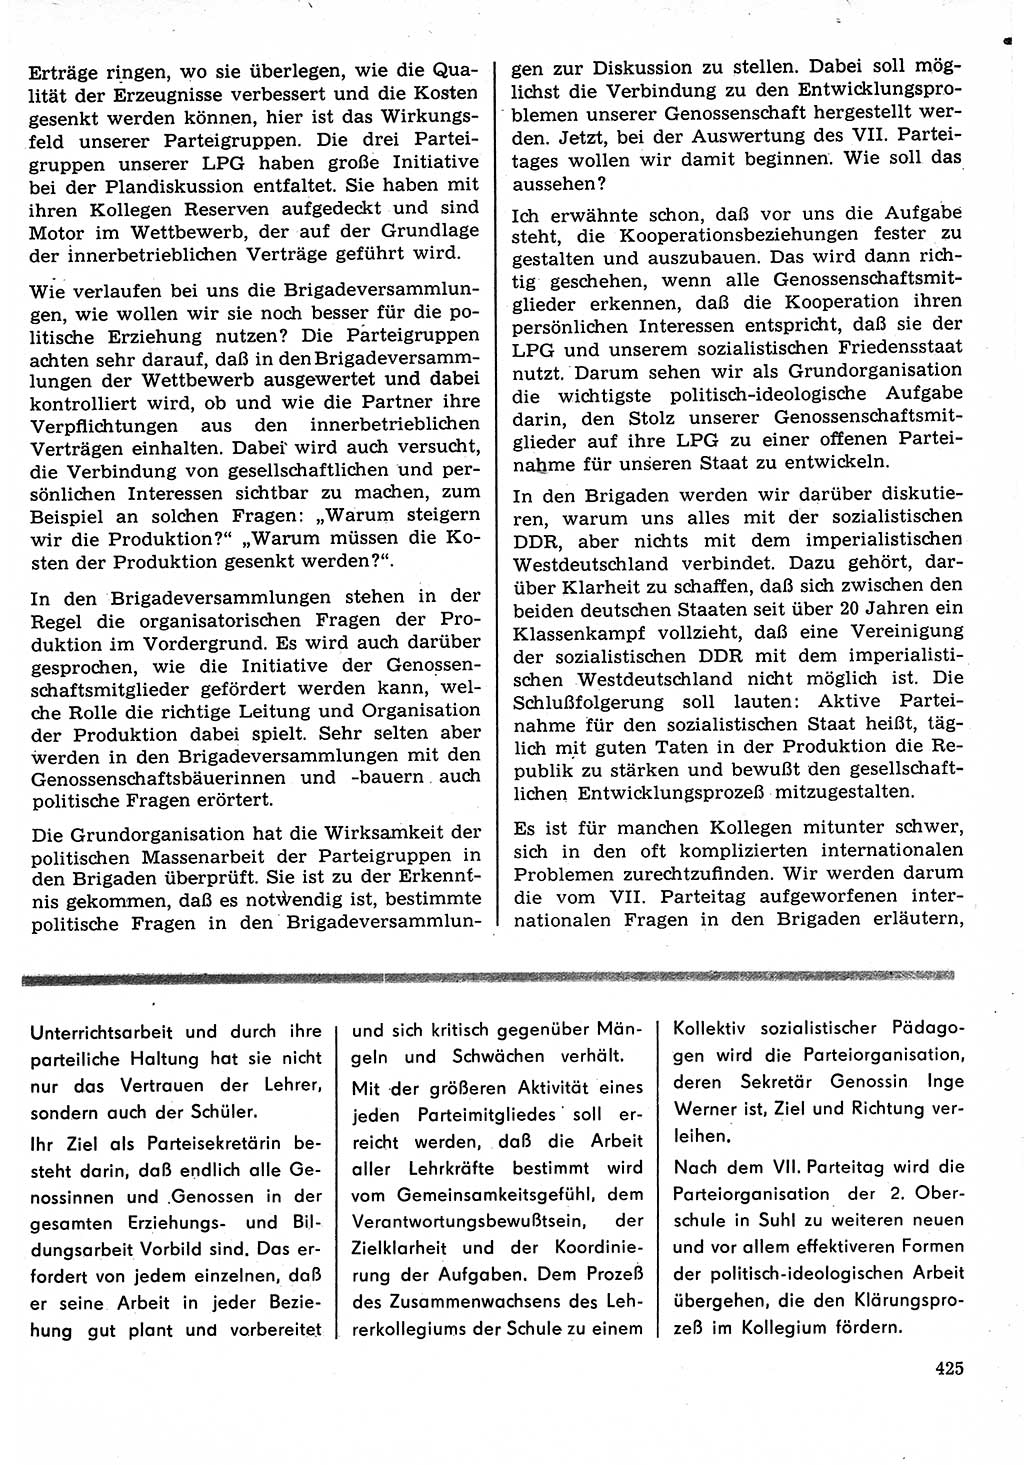 Neuer Weg (NW), Organ des Zentralkomitees (ZK) der SED (Sozialistische Einheitspartei Deutschlands) für Fragen des Parteilebens, 22. Jahrgang [Deutsche Demokratische Republik (DDR)] 1967, Seite 425 (NW ZK SED DDR 1967, S. 425)